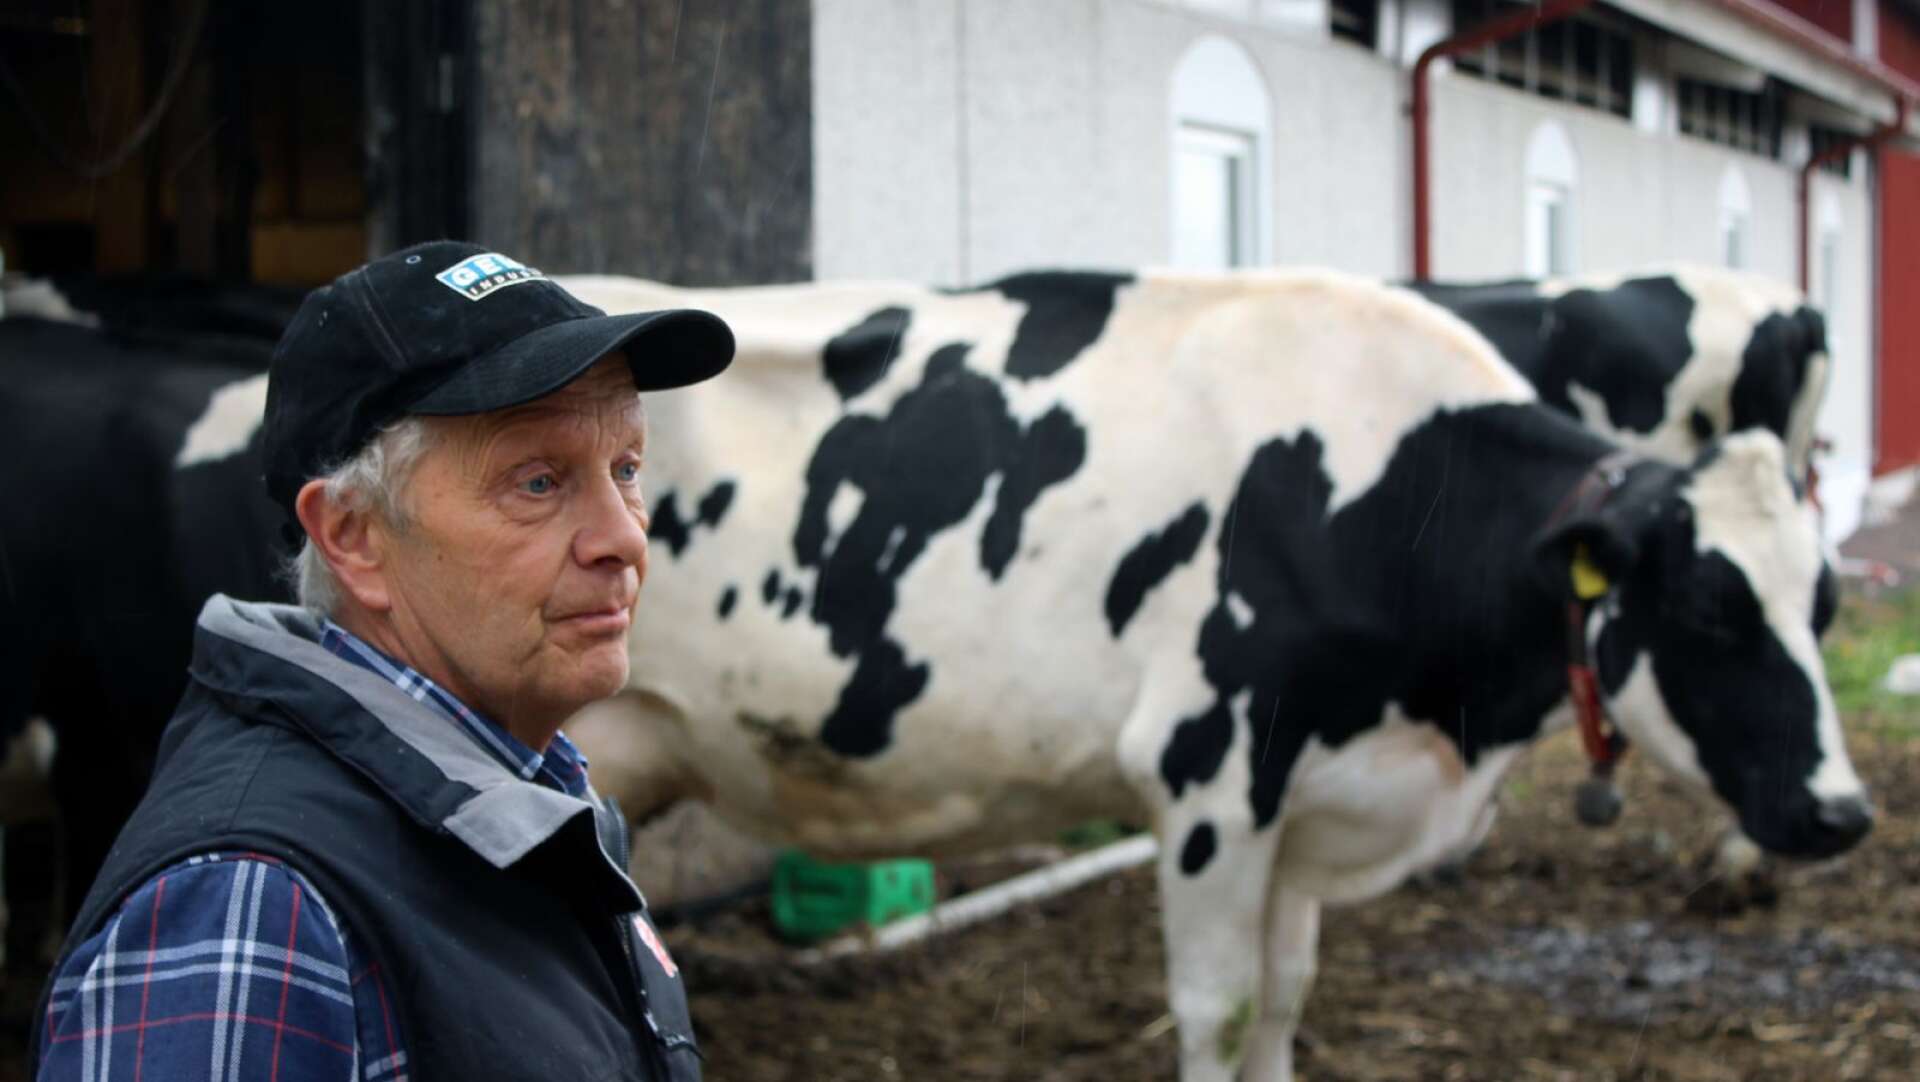 Mjölkbonden Lars Pehrson har redan gett upp hoppet om årets första skörd. Men han håller noga koll på väderprognoserna och hoppas på bättring. Mycket regn kan rädda upp årets säsong.